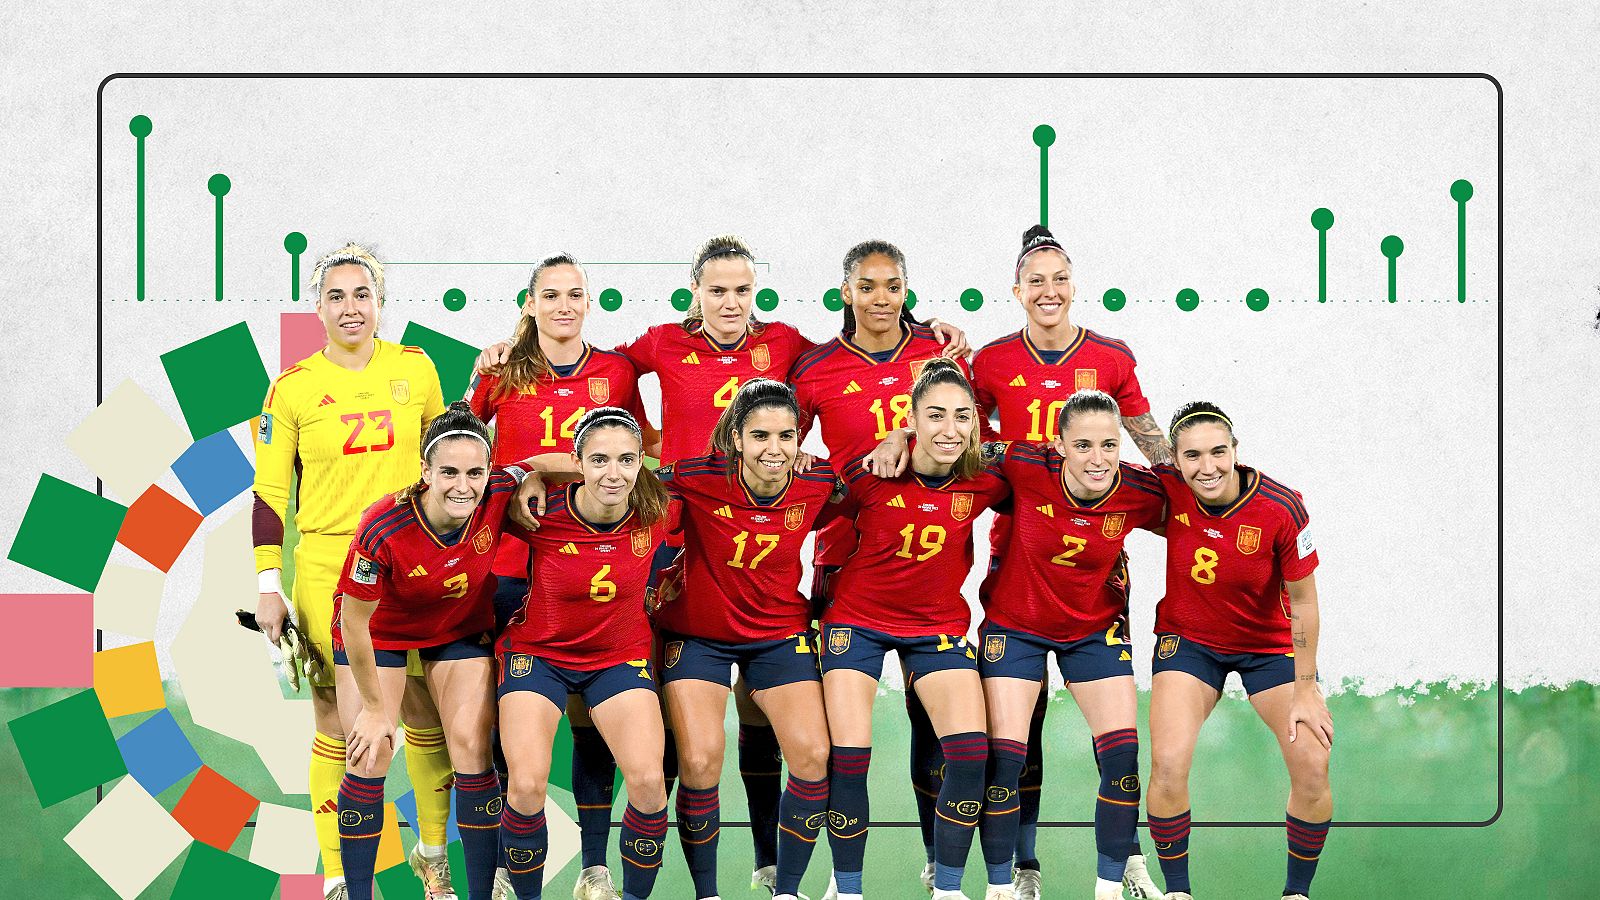 En qué campo está jugando la selección española femenina